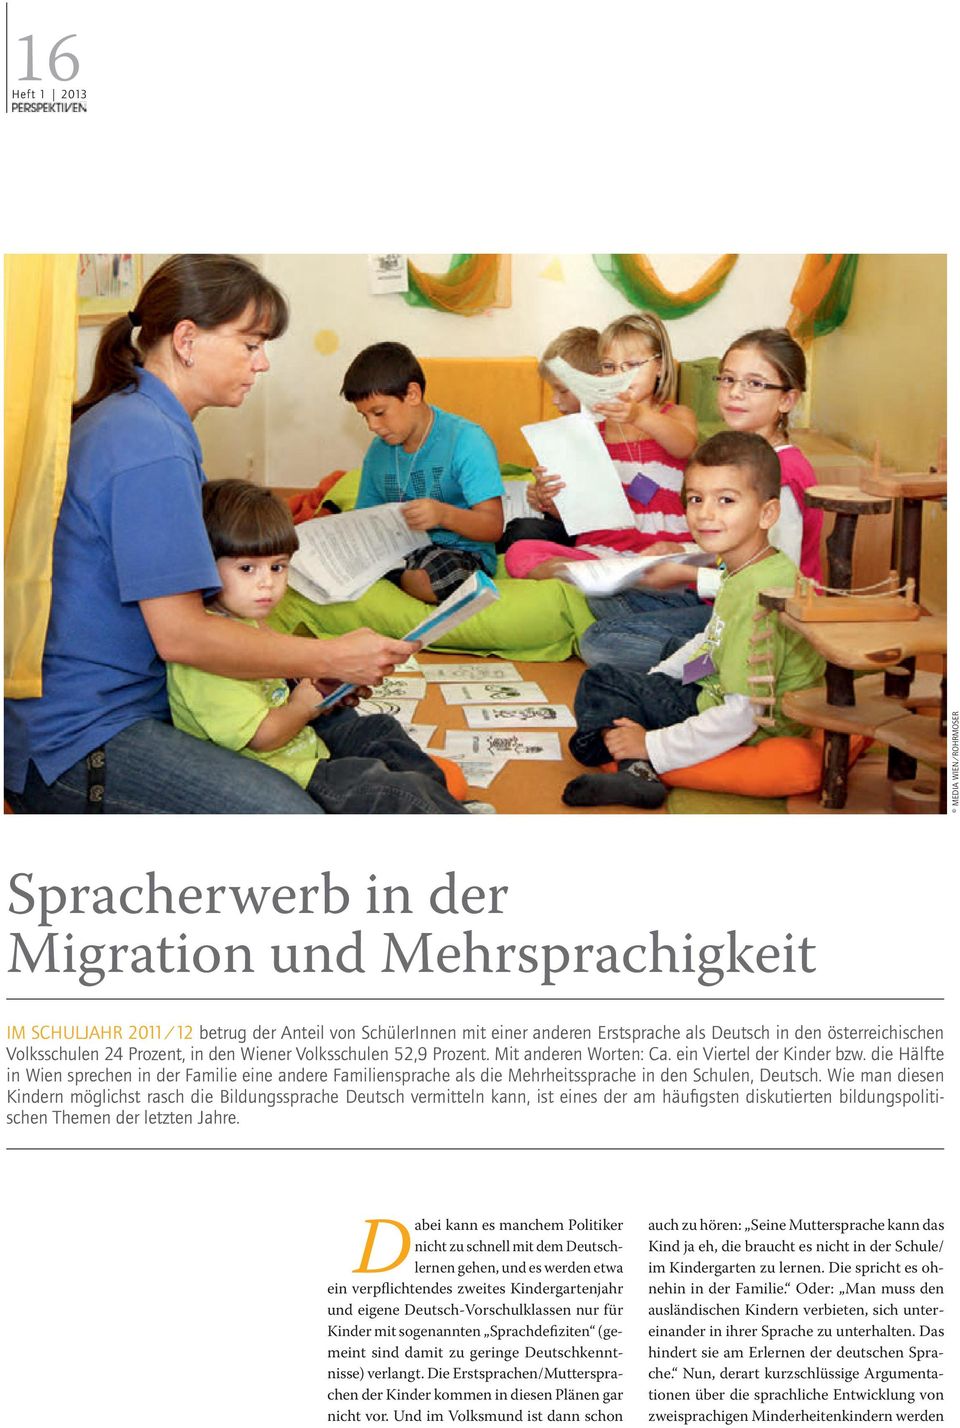 die Hälfte in wien sprechen in der Familie eine andere Familiensprache als die mehrheitssprache in den schulen, deutsch.